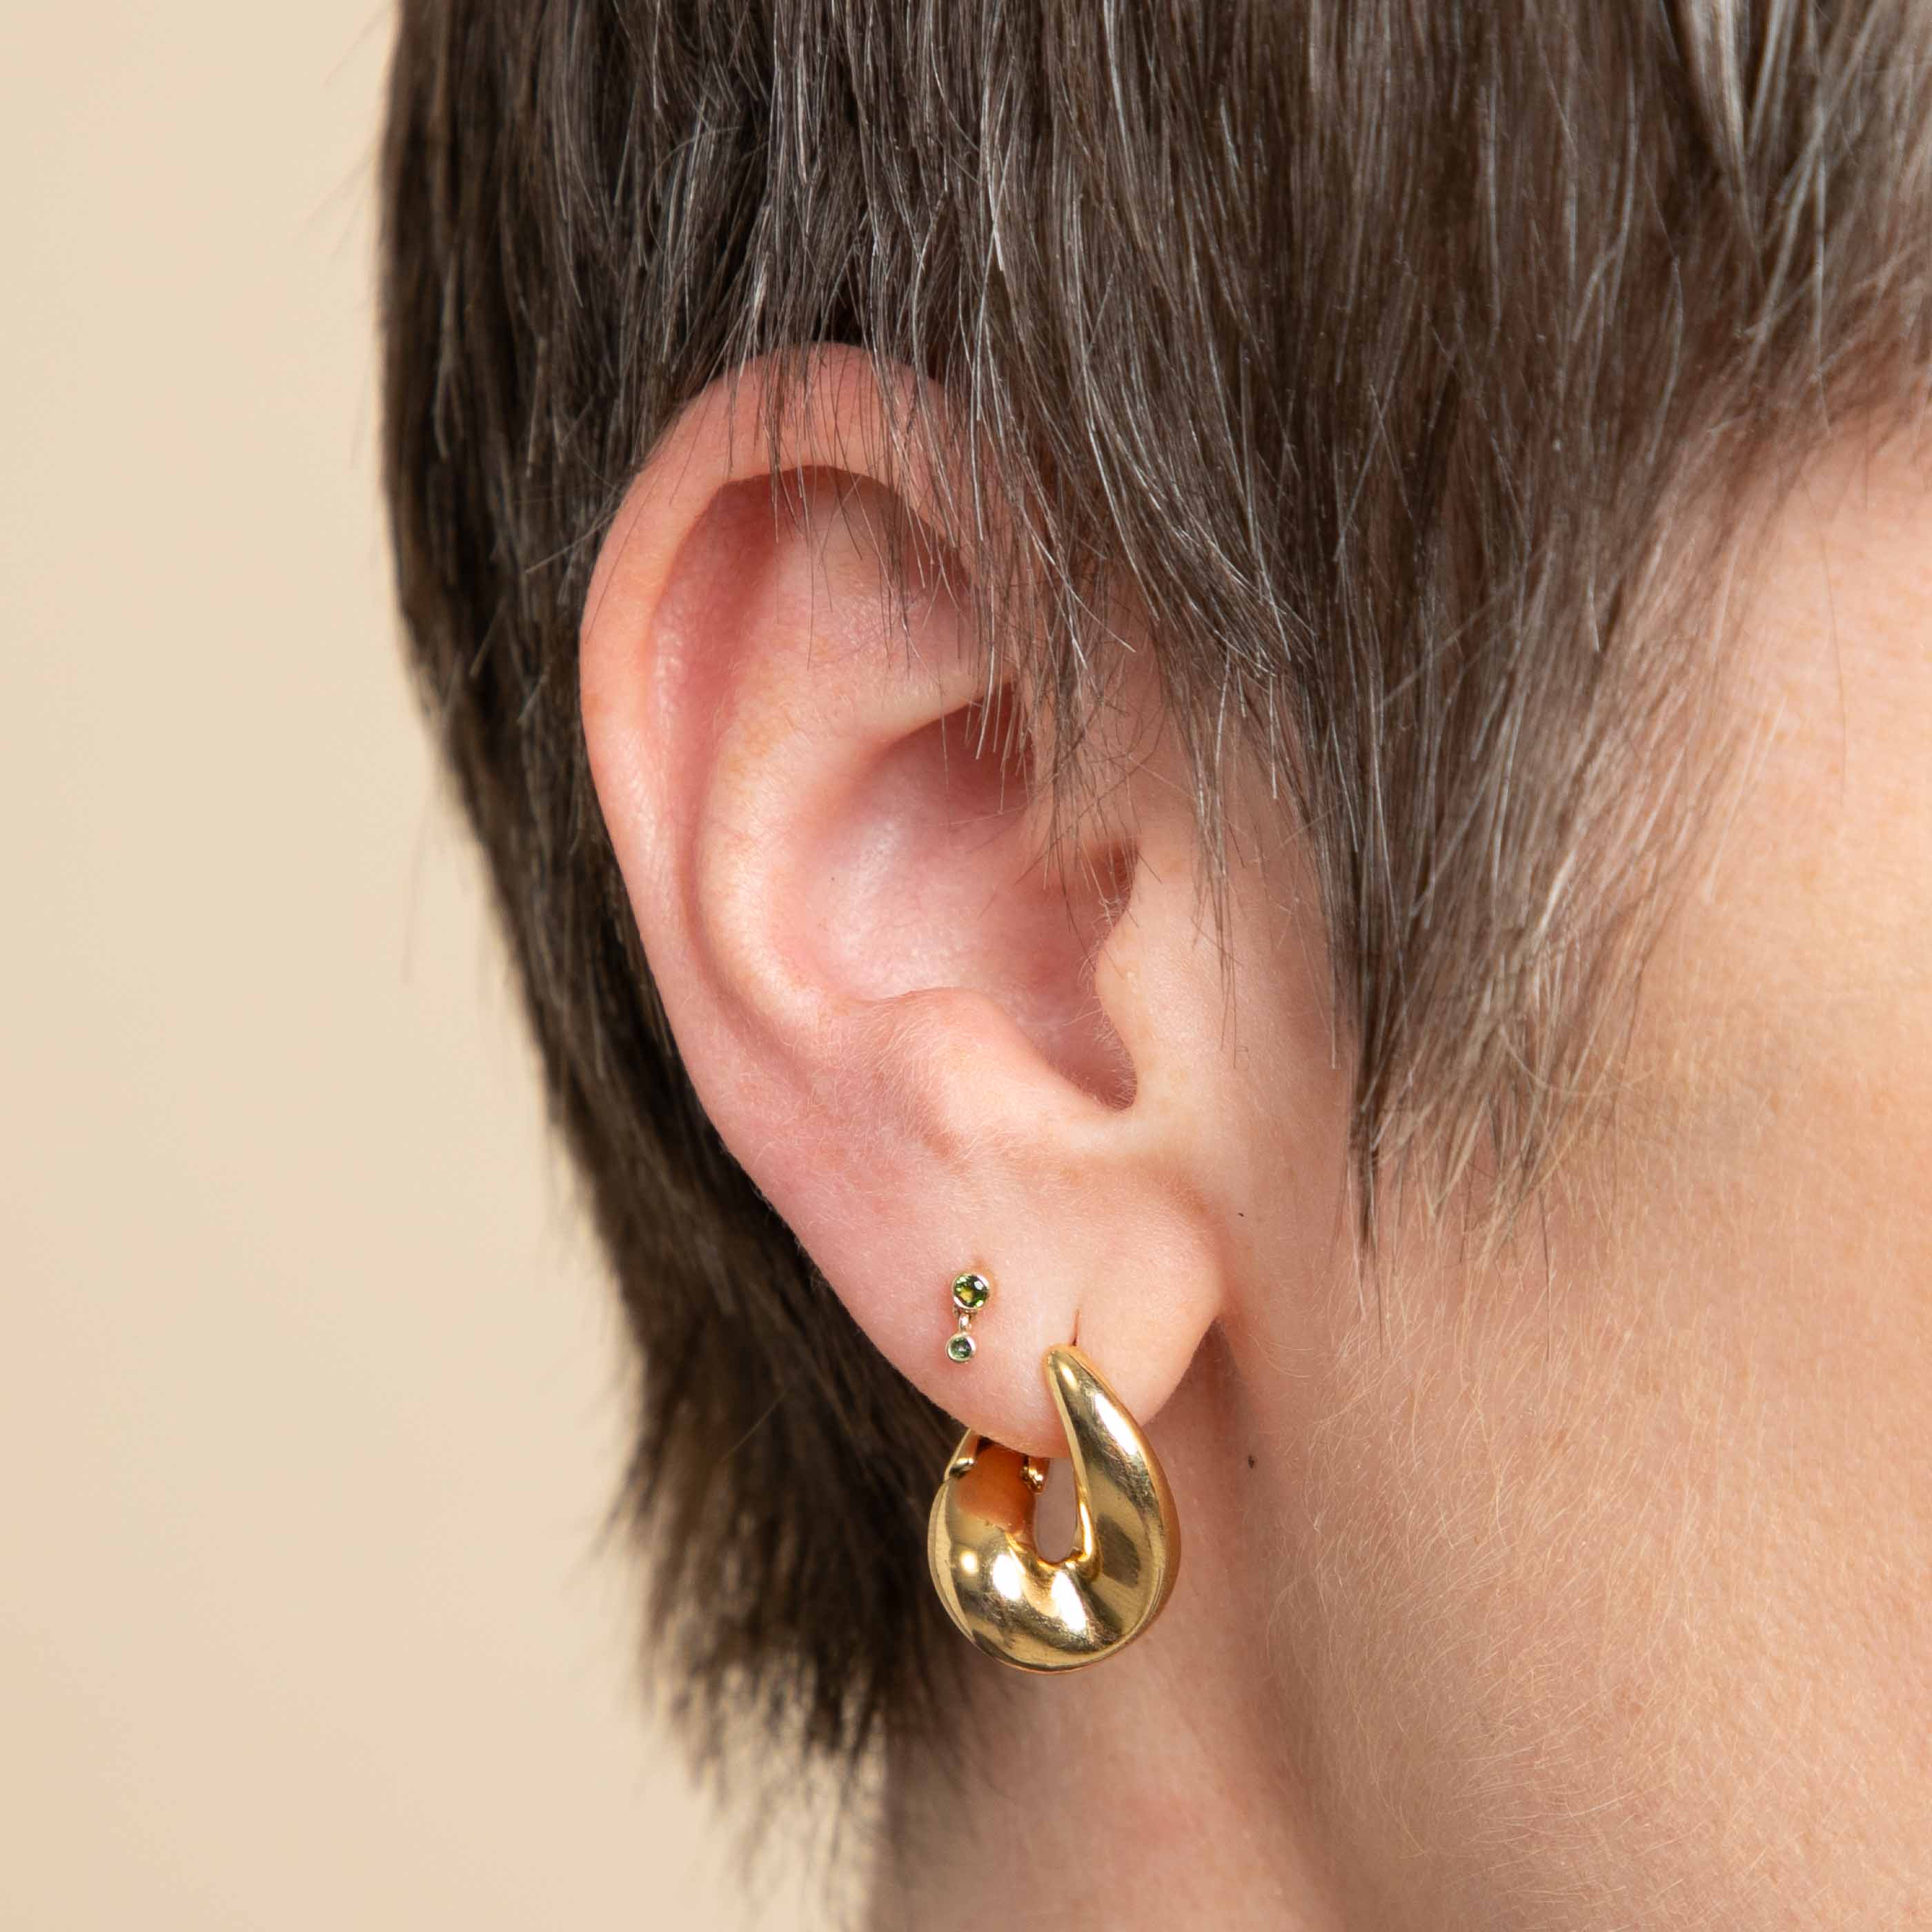 Second Piercing Earrings Buy Latest Second Ear Piercing Designs Online